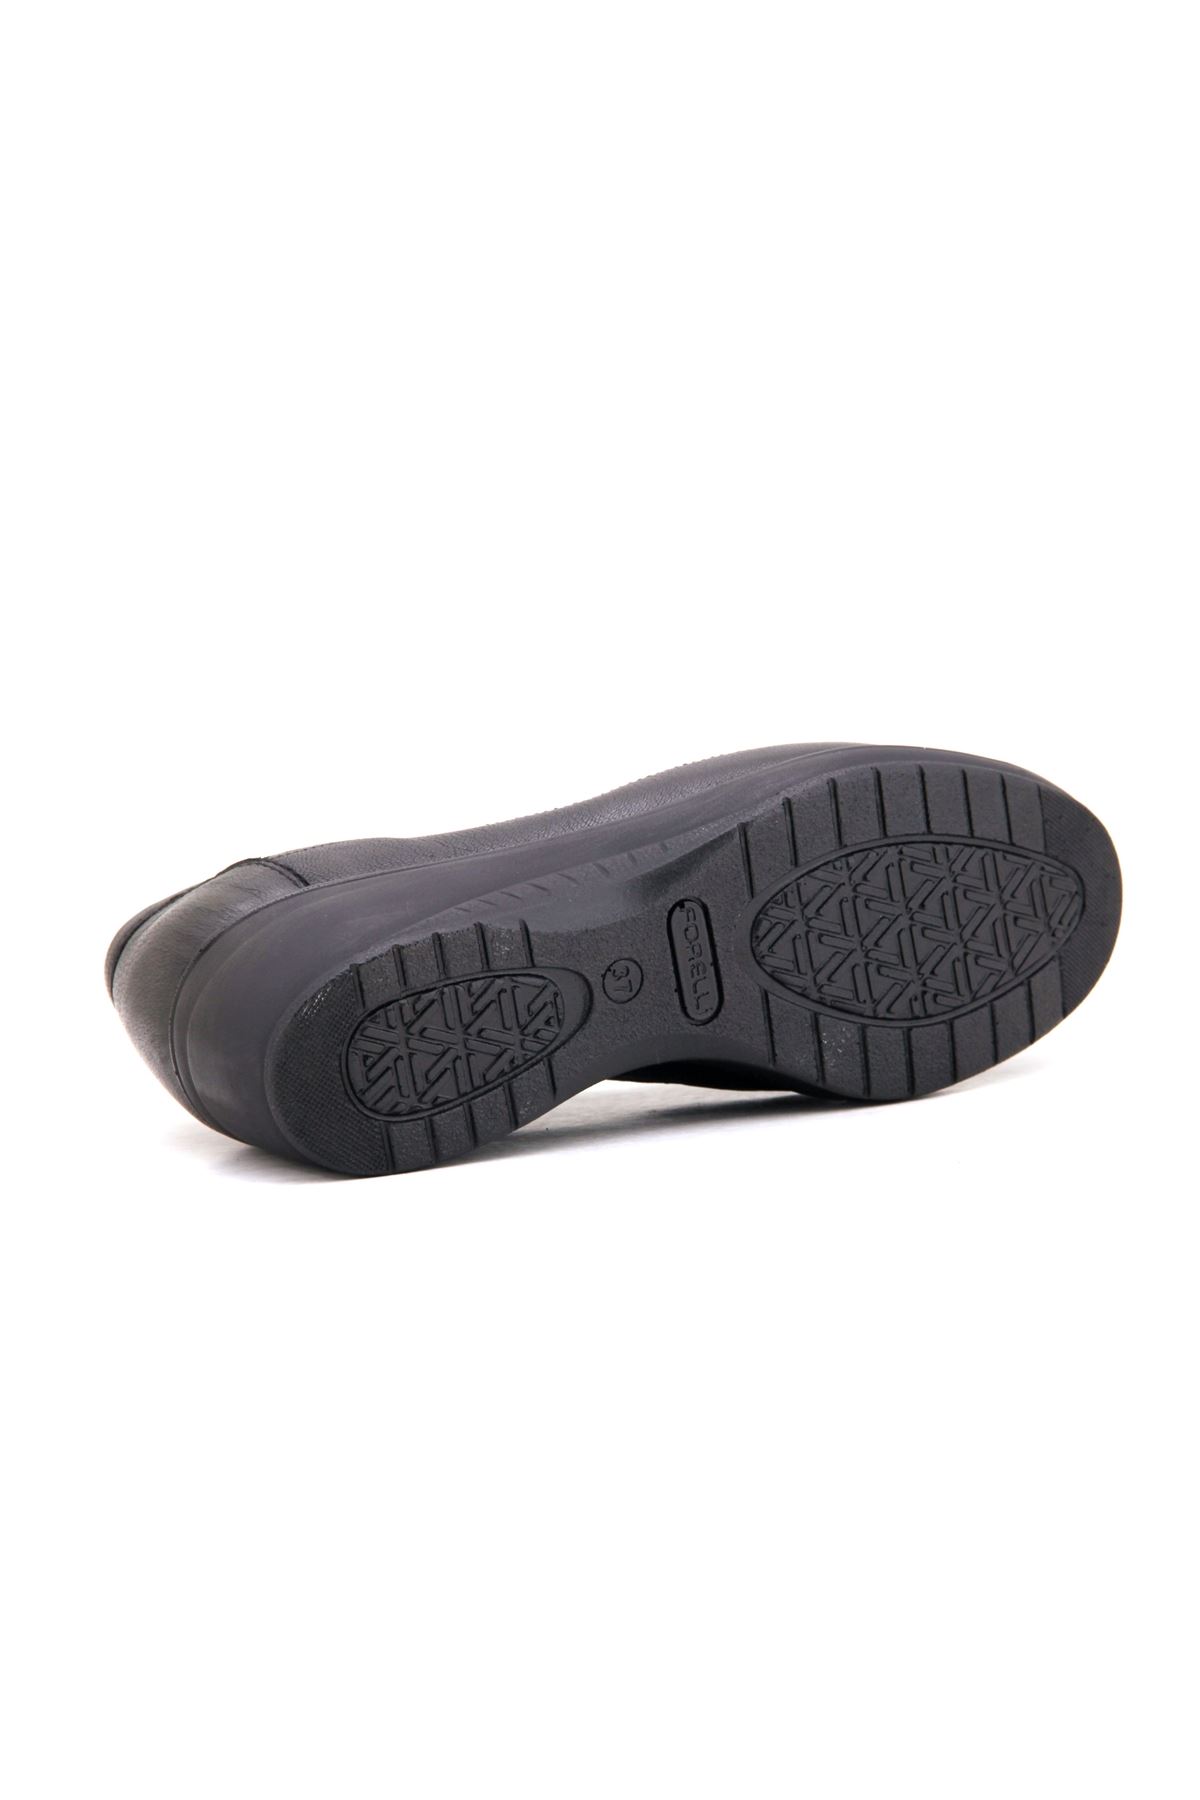 Forelli Rosa (57603) Comfort Kadın Ayakkabı - Siyah